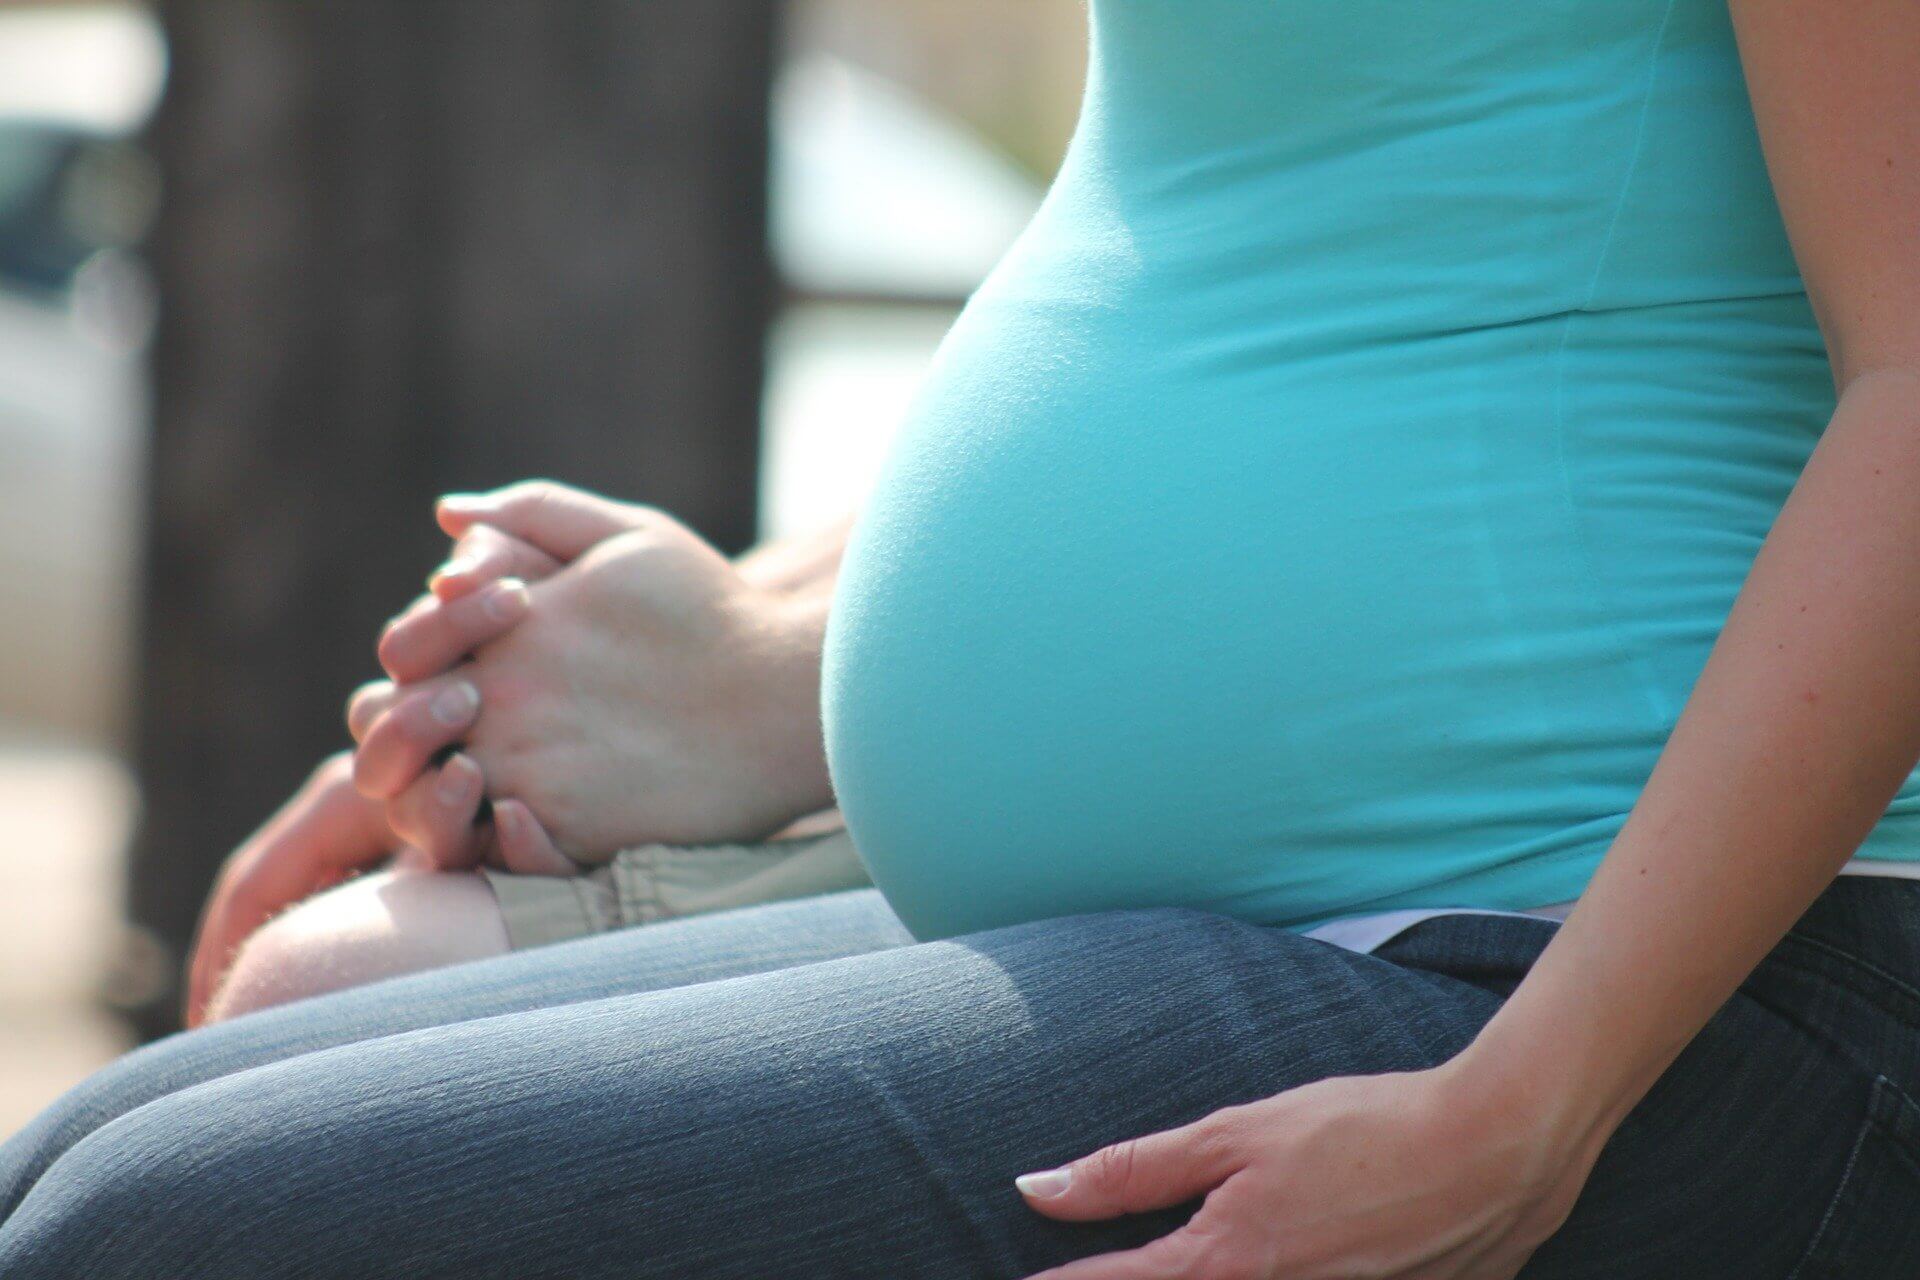 الأسبوع الـ36 للحمل: علامات الحمل وحجم الجنين وقائمة مهامكِ!